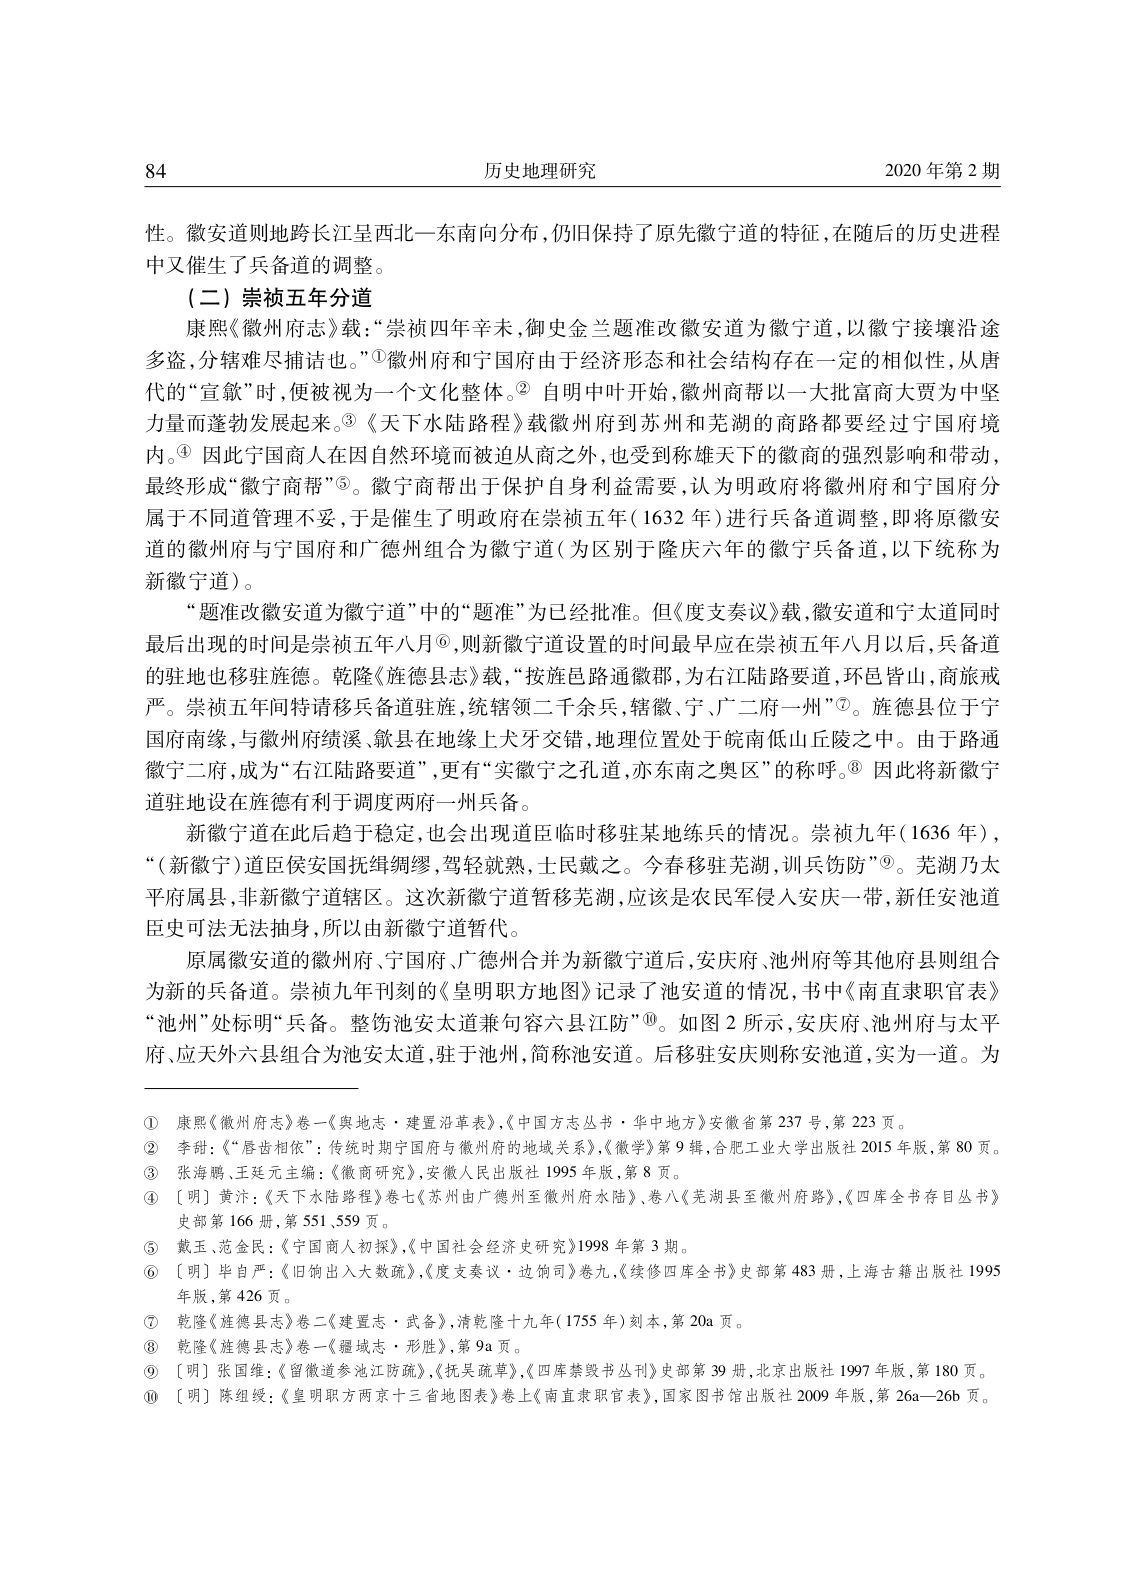 明代安庆、徽州地区兵备道分合演变考论_page-0013.jpg